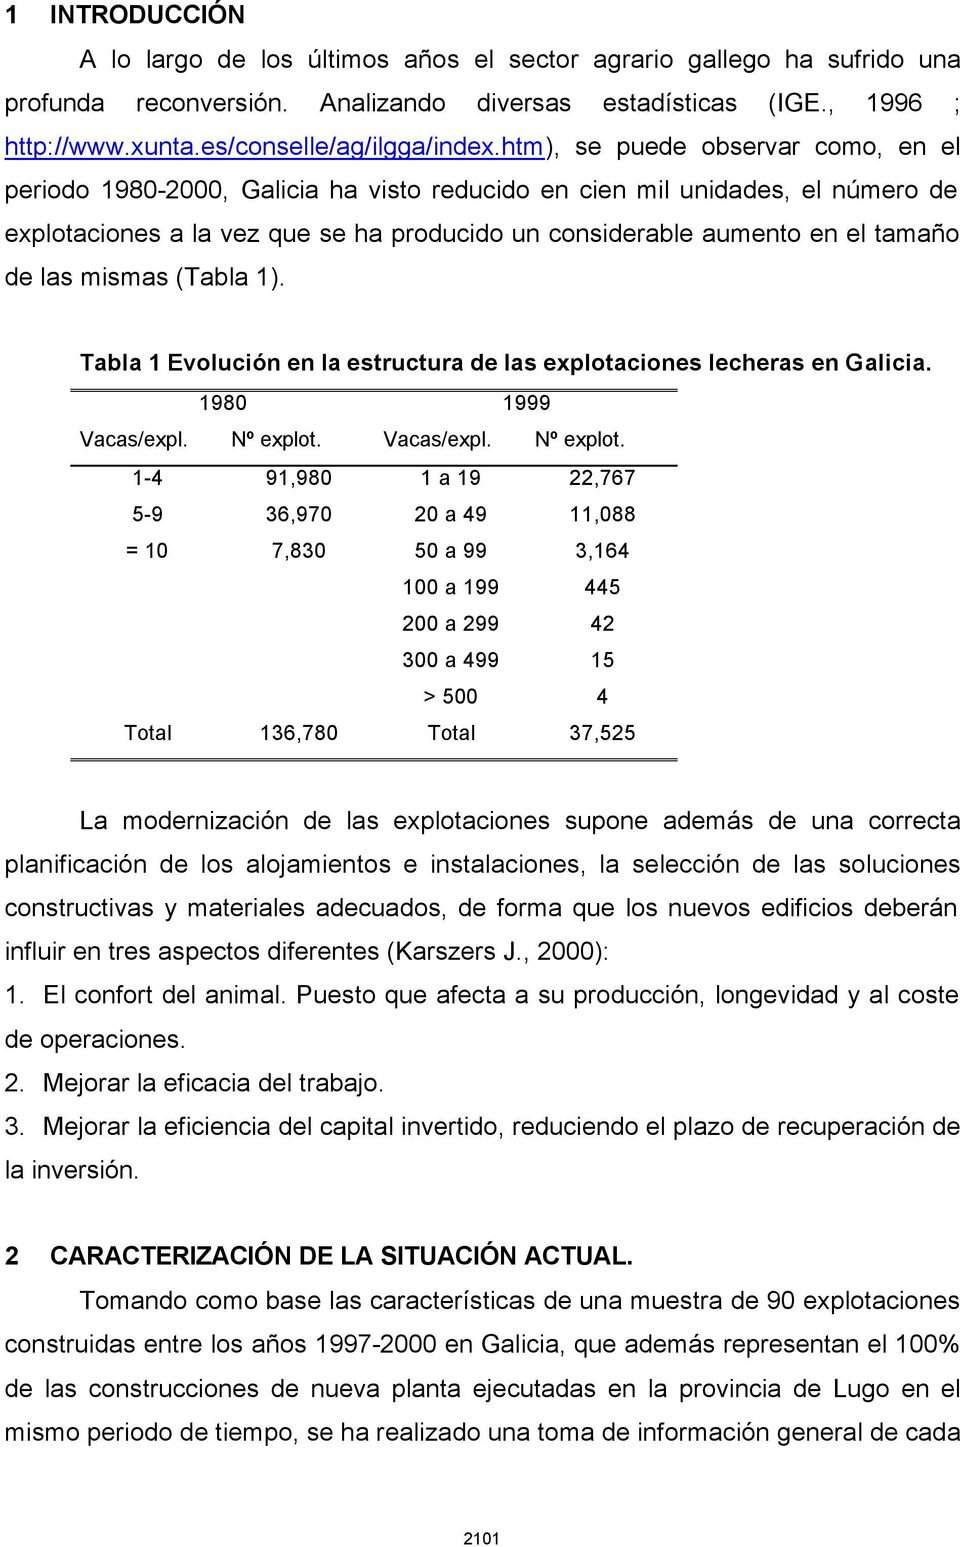 htm), se puede observar como, en el periodo 1980-2000, Galicia ha visto reducido en cien mil unidades, el número de explotaciones a la vez que se ha producido un considerable aumento en el tamaño de